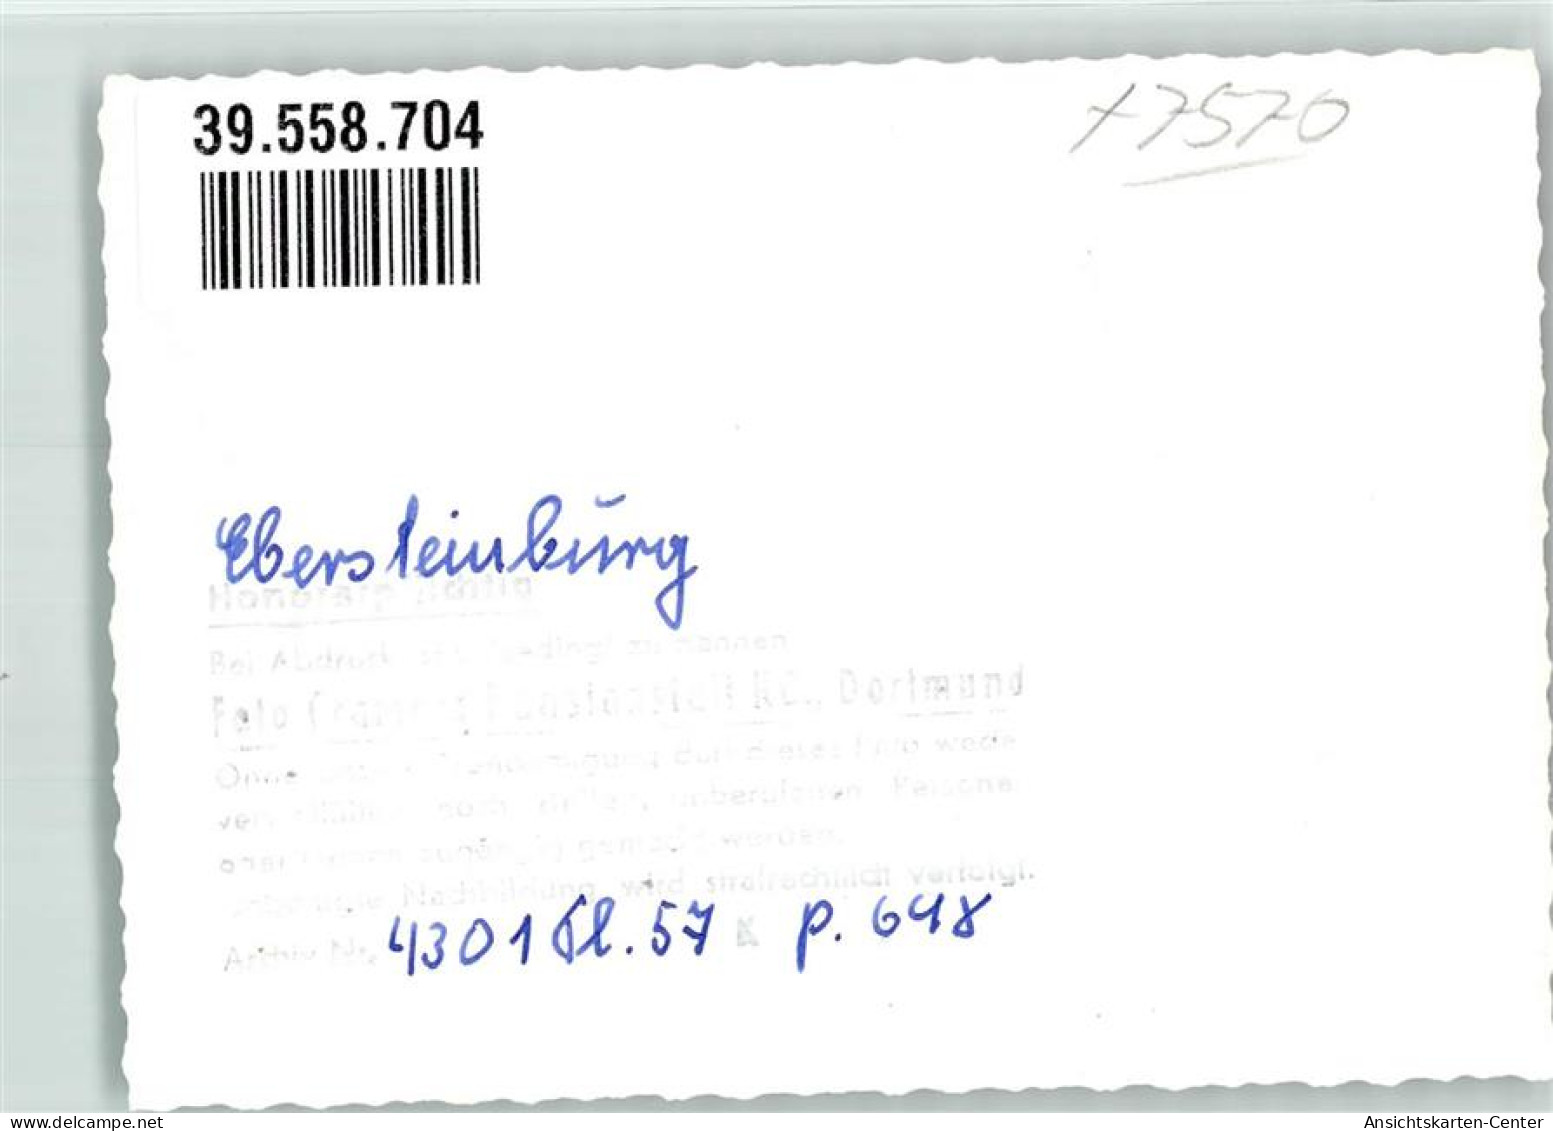 39558704 - Ebersteinburg - Baden-Baden